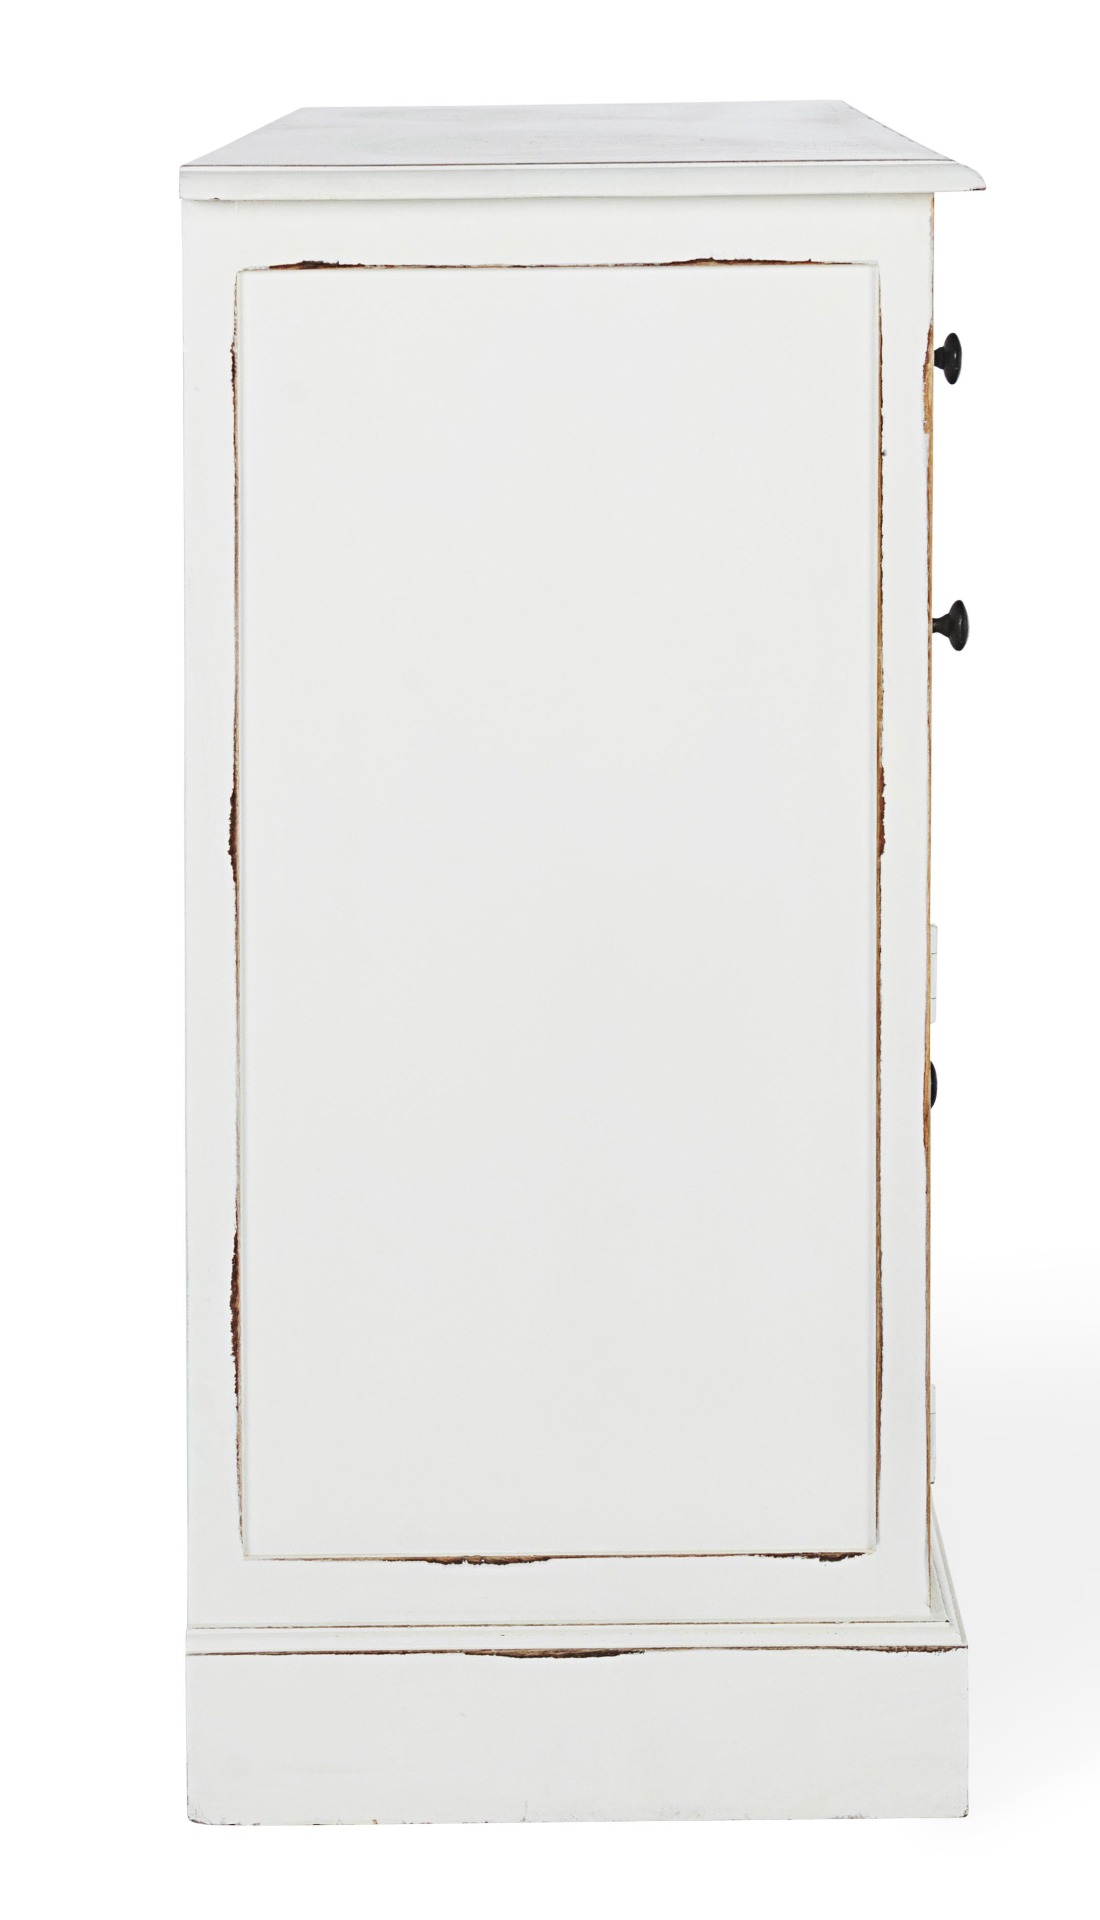 Das Sideboard Jefferson überzeugt mit seinem klassischen Design. Gefertigt wurde es aus Mango-Holz, welches einen weißen Farbton besitzt. Das Gestell ist auch aus Mango-Holz. Das Sideboard verfügt über drei Türen und drei Schubladen. Die Breite beträgt 14